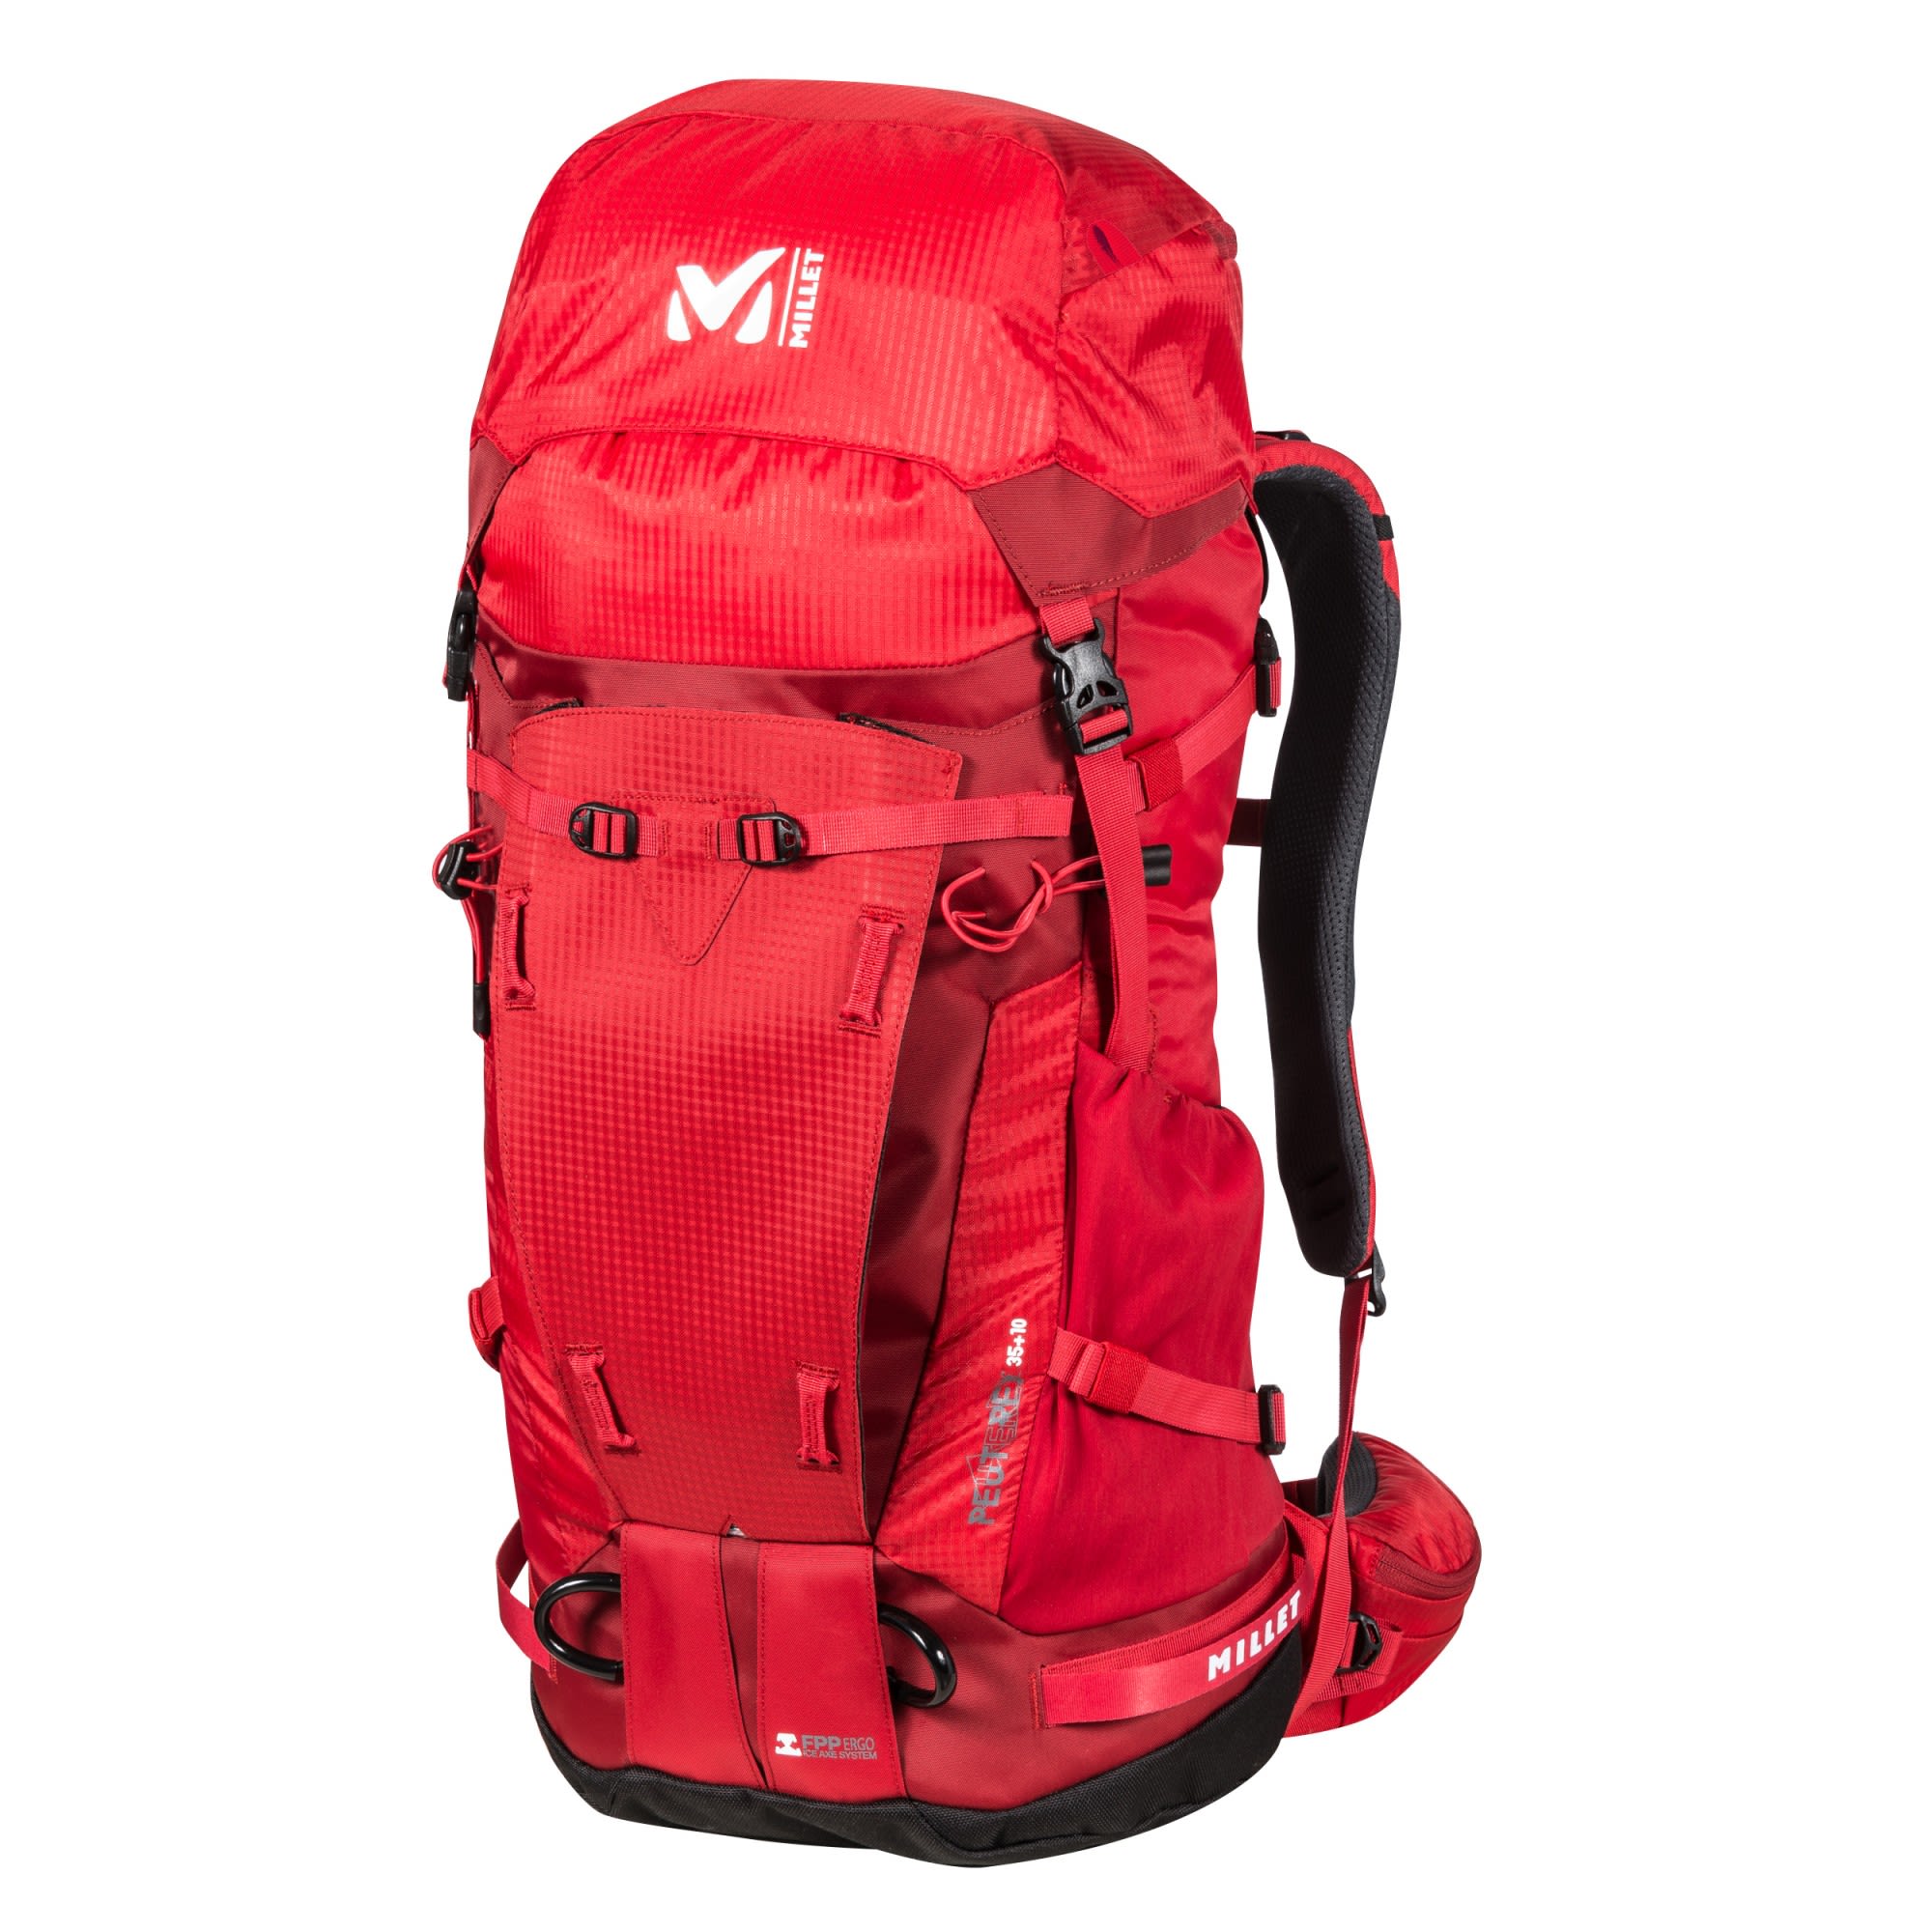 Millet Peuterey Integrale 35+10 Rot- Alpin- und Trekkingruckscke- Grsse 35 + 10 l - Farbe Red - Rouge unter Millet